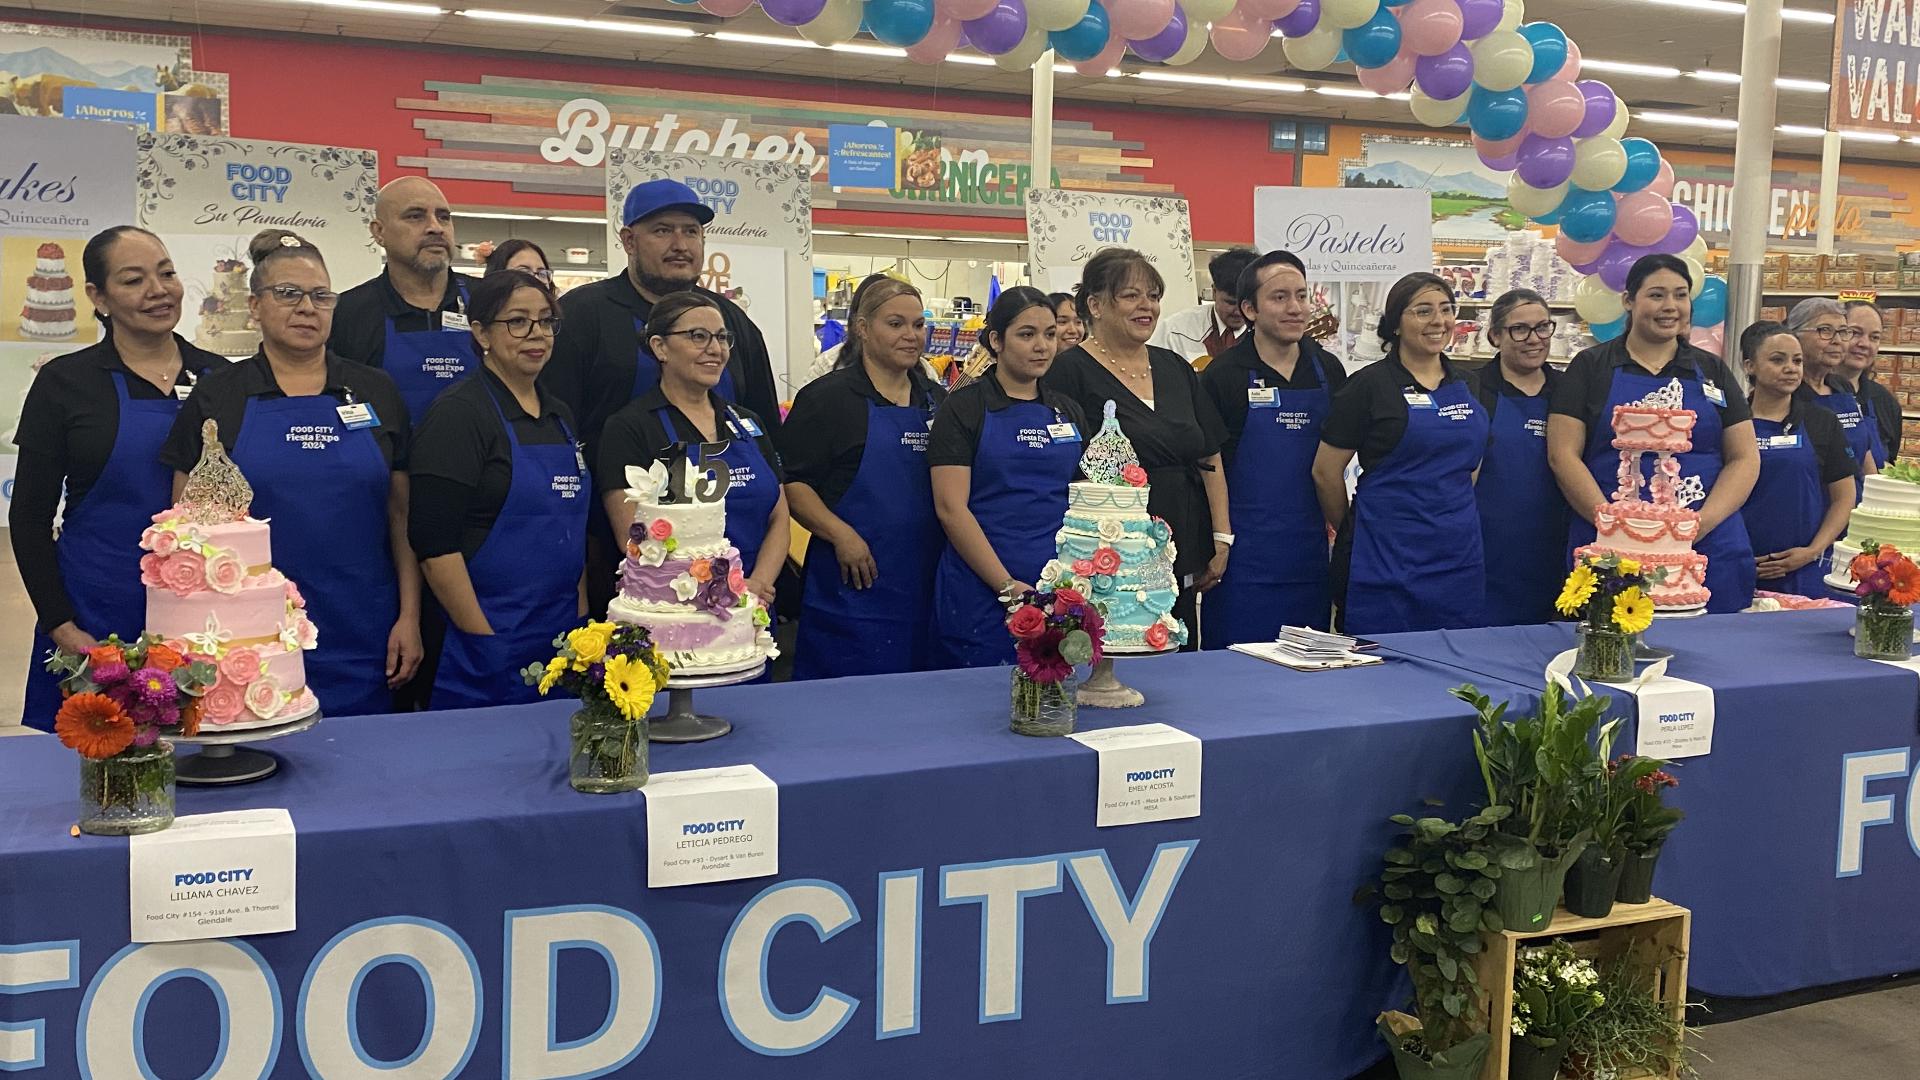 Los supermercados Food City llevaron a cabo su concurso anual de pasteles en una de las tiendas de Avondale con una participación máxima.